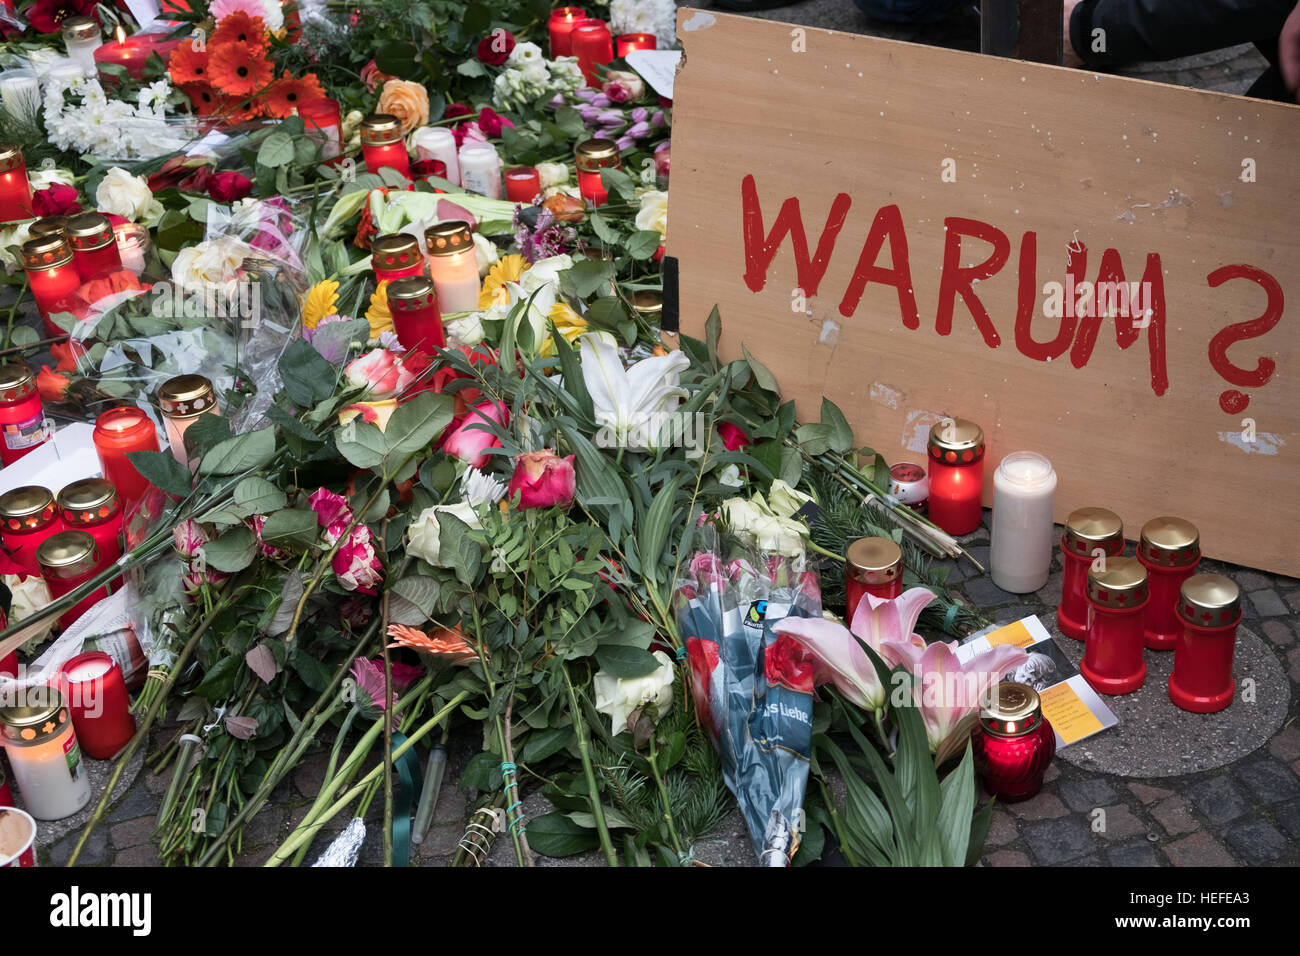 Les bougies, les fleurs et un signe avec le mot allemand 'Warum' (pourquoi) au marché de Noël à Berlin, le lendemain de l'attaque terroriste Banque D'Images